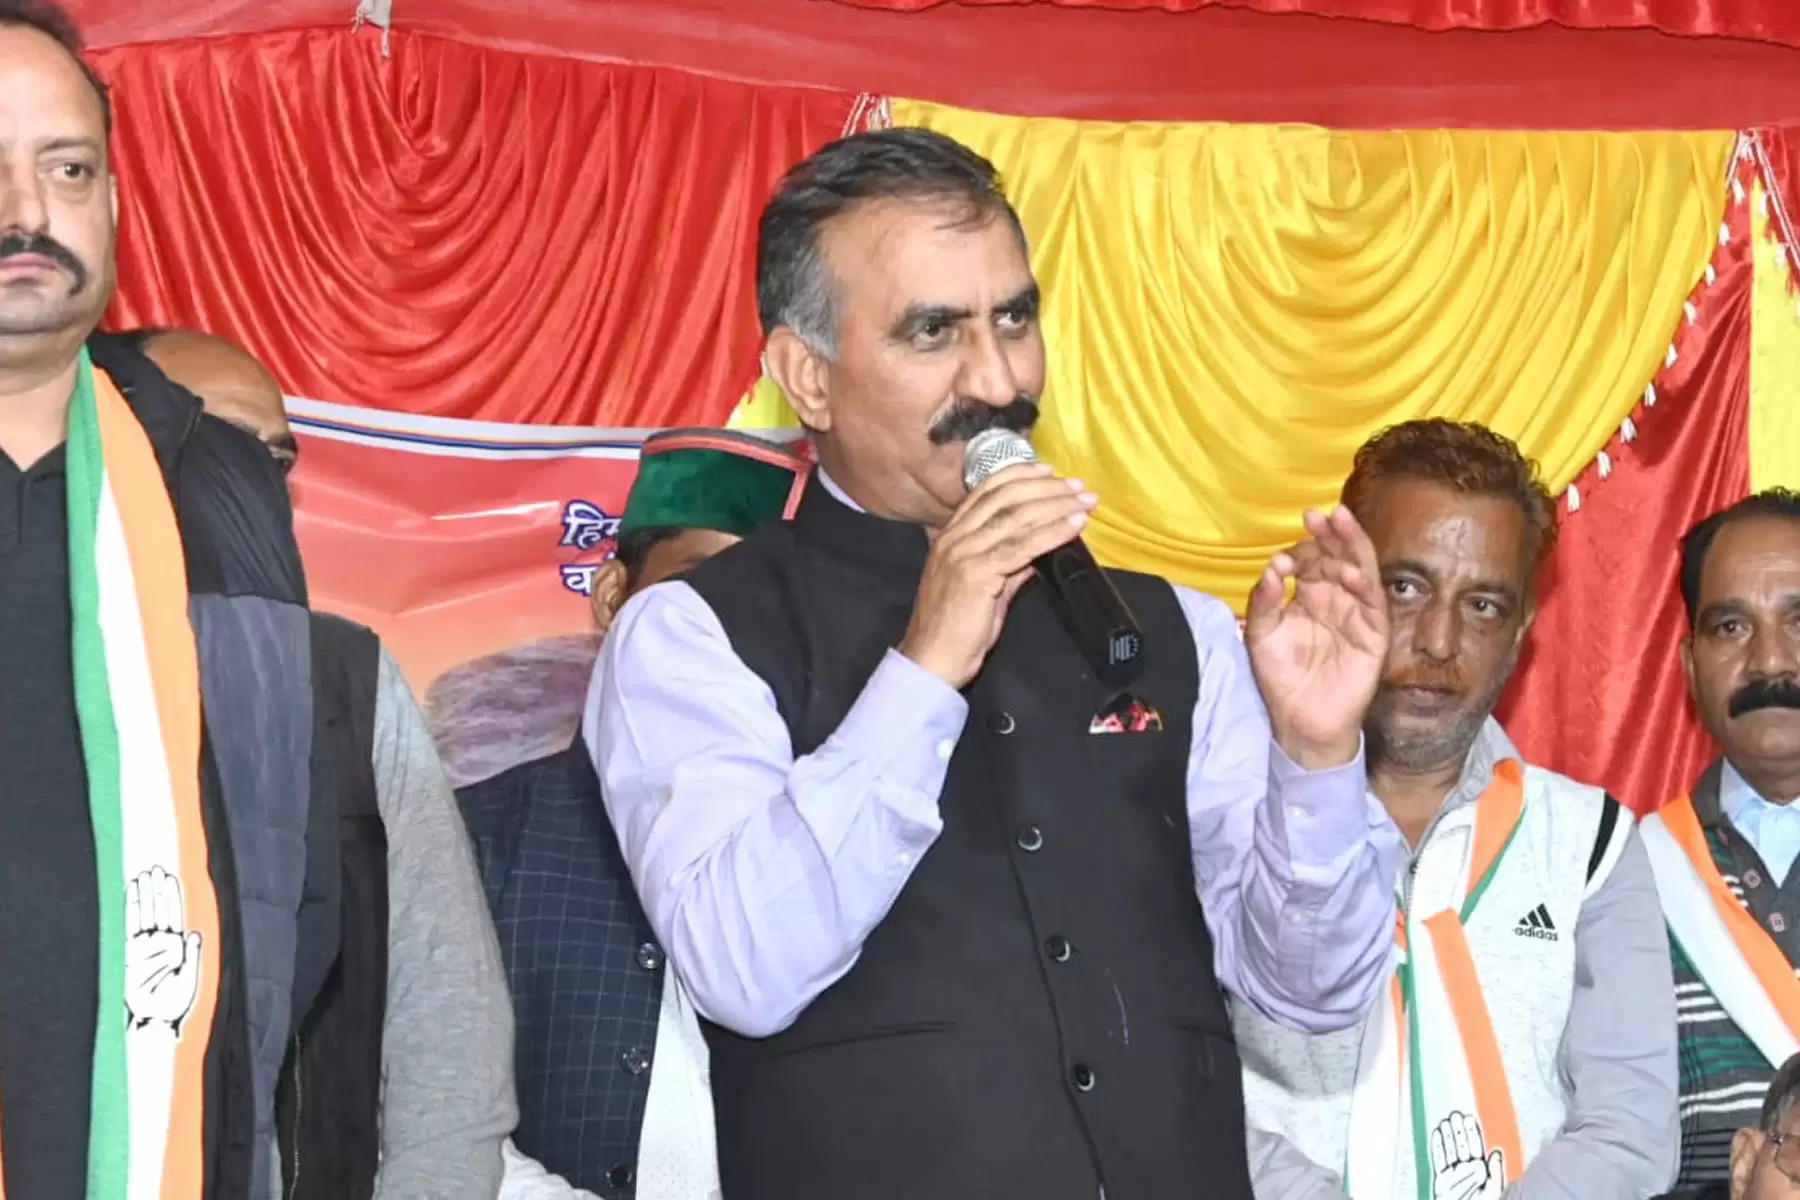 हिमाचल प्रदेश कांग्रेस के वरिष्ठ नेता सुखविंद्र सिंह सुक्खू (Sukhvinder Singh Sukhu) ने कहा कि प्रदेश विधानसभा चुनाव (Himachal Election 2022) में कांग्रेस को पूर्ण बहुमत मिलेगा। 8 दिसंबर को नतीजे आने के बाद मुख्यमंत्री का चयन करने में कोई दिक्कत नहीं होगी। कांग्रेस की जीत की स्थिति में मुख्यमंत्री पद के प्रबल दावेदारों में शुमार किए जा रहे सुक्खू ने कहा कि विधायकों की राय के आधार पर आलाकमान जिसे अपना आशीर्वाद देगा, वह हिमाचल का मुख्यमंत्री होगा। 